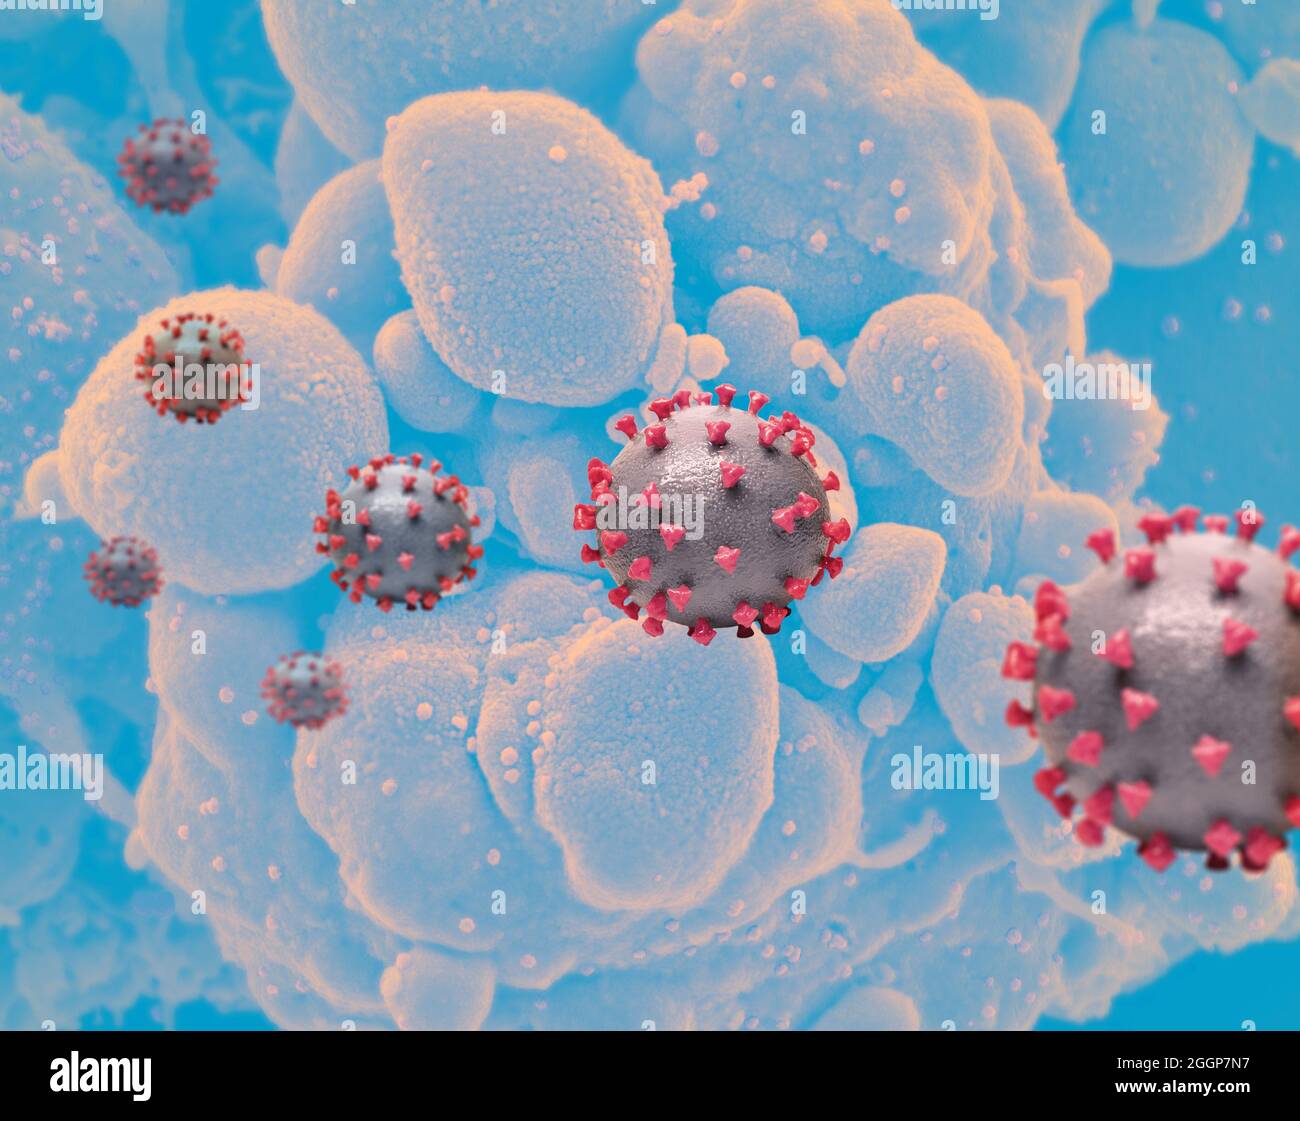 Reproducción creativa de partículas del virus SARS-CoV-2. Foto de stock